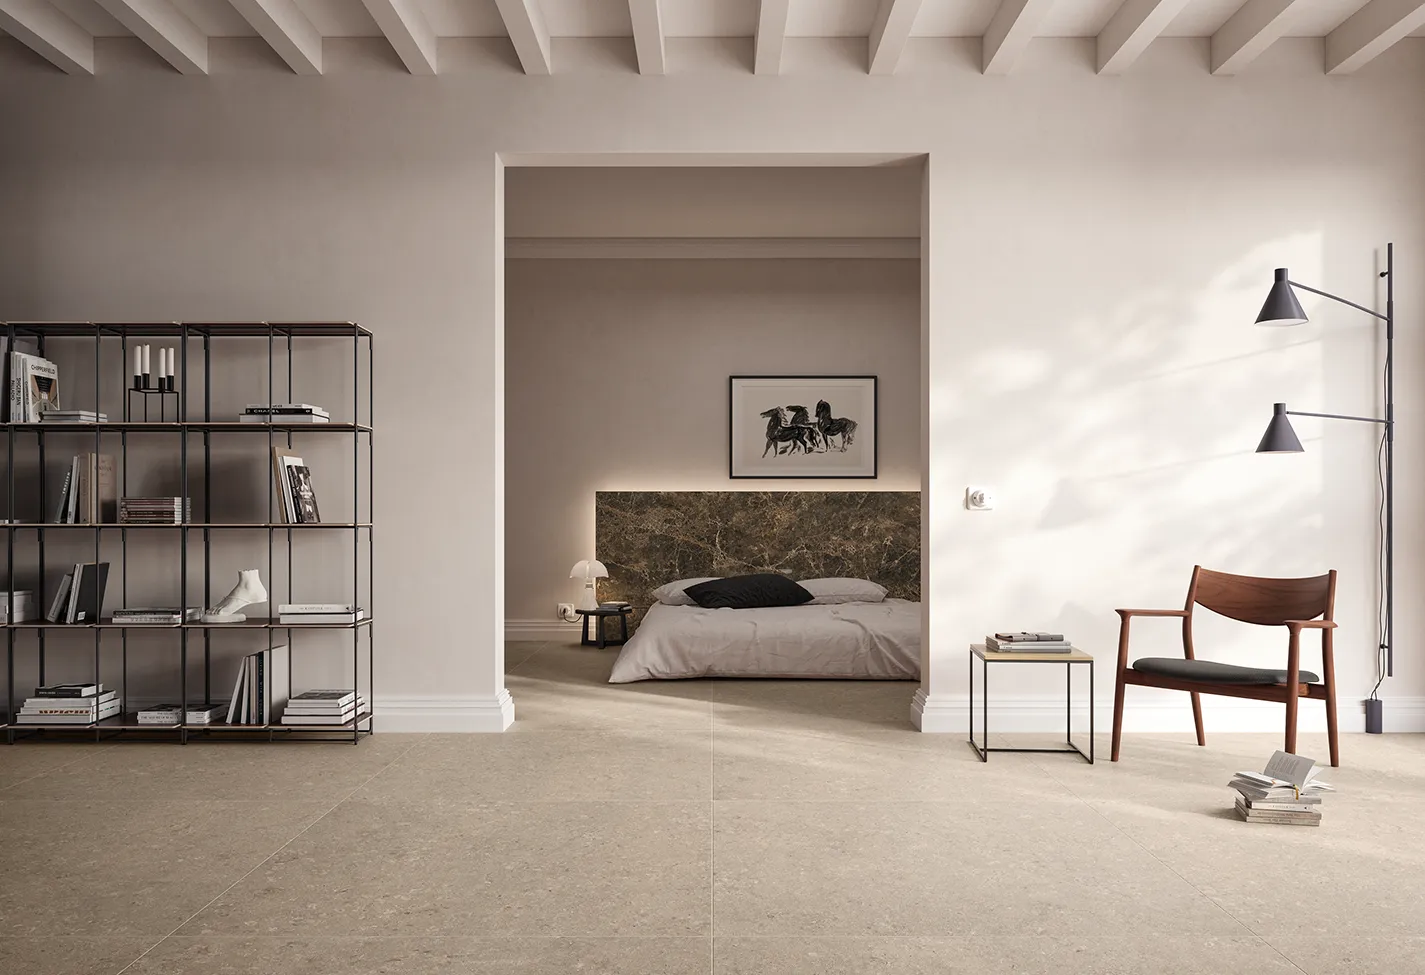 Geräumiges minimalistisches Interieur mit beigefarbenem Feinsteinzeugboden, modernem Metallregal, schlichter Schlafzimmeransicht und Designer-Möbeln.